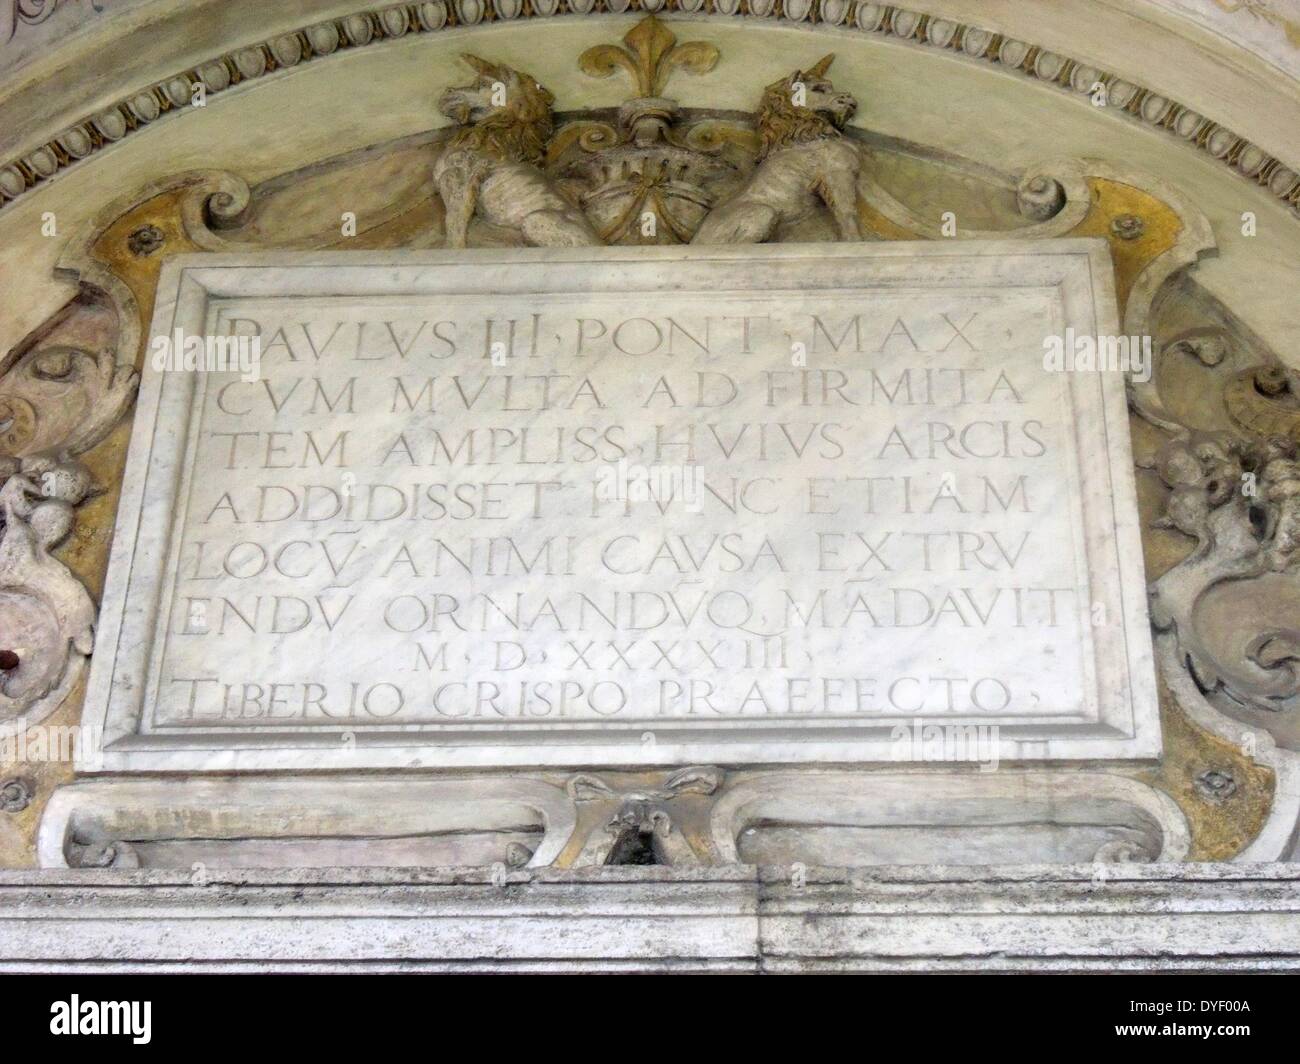 Lateinische Inschrift Detail aus dem Castel Sant'Angelo, einem hohen zylindrischen Gebäude im Parco Adriano, Rom, Italien. Es ursprünglich als mausoleum von Römischen Kaiser Hadrian in Auftrag gegeben wurde. Das Castel war einst das höchste Gebäude in Rom, und ist heute als Museum genutzt. Circa 2. Stockfoto